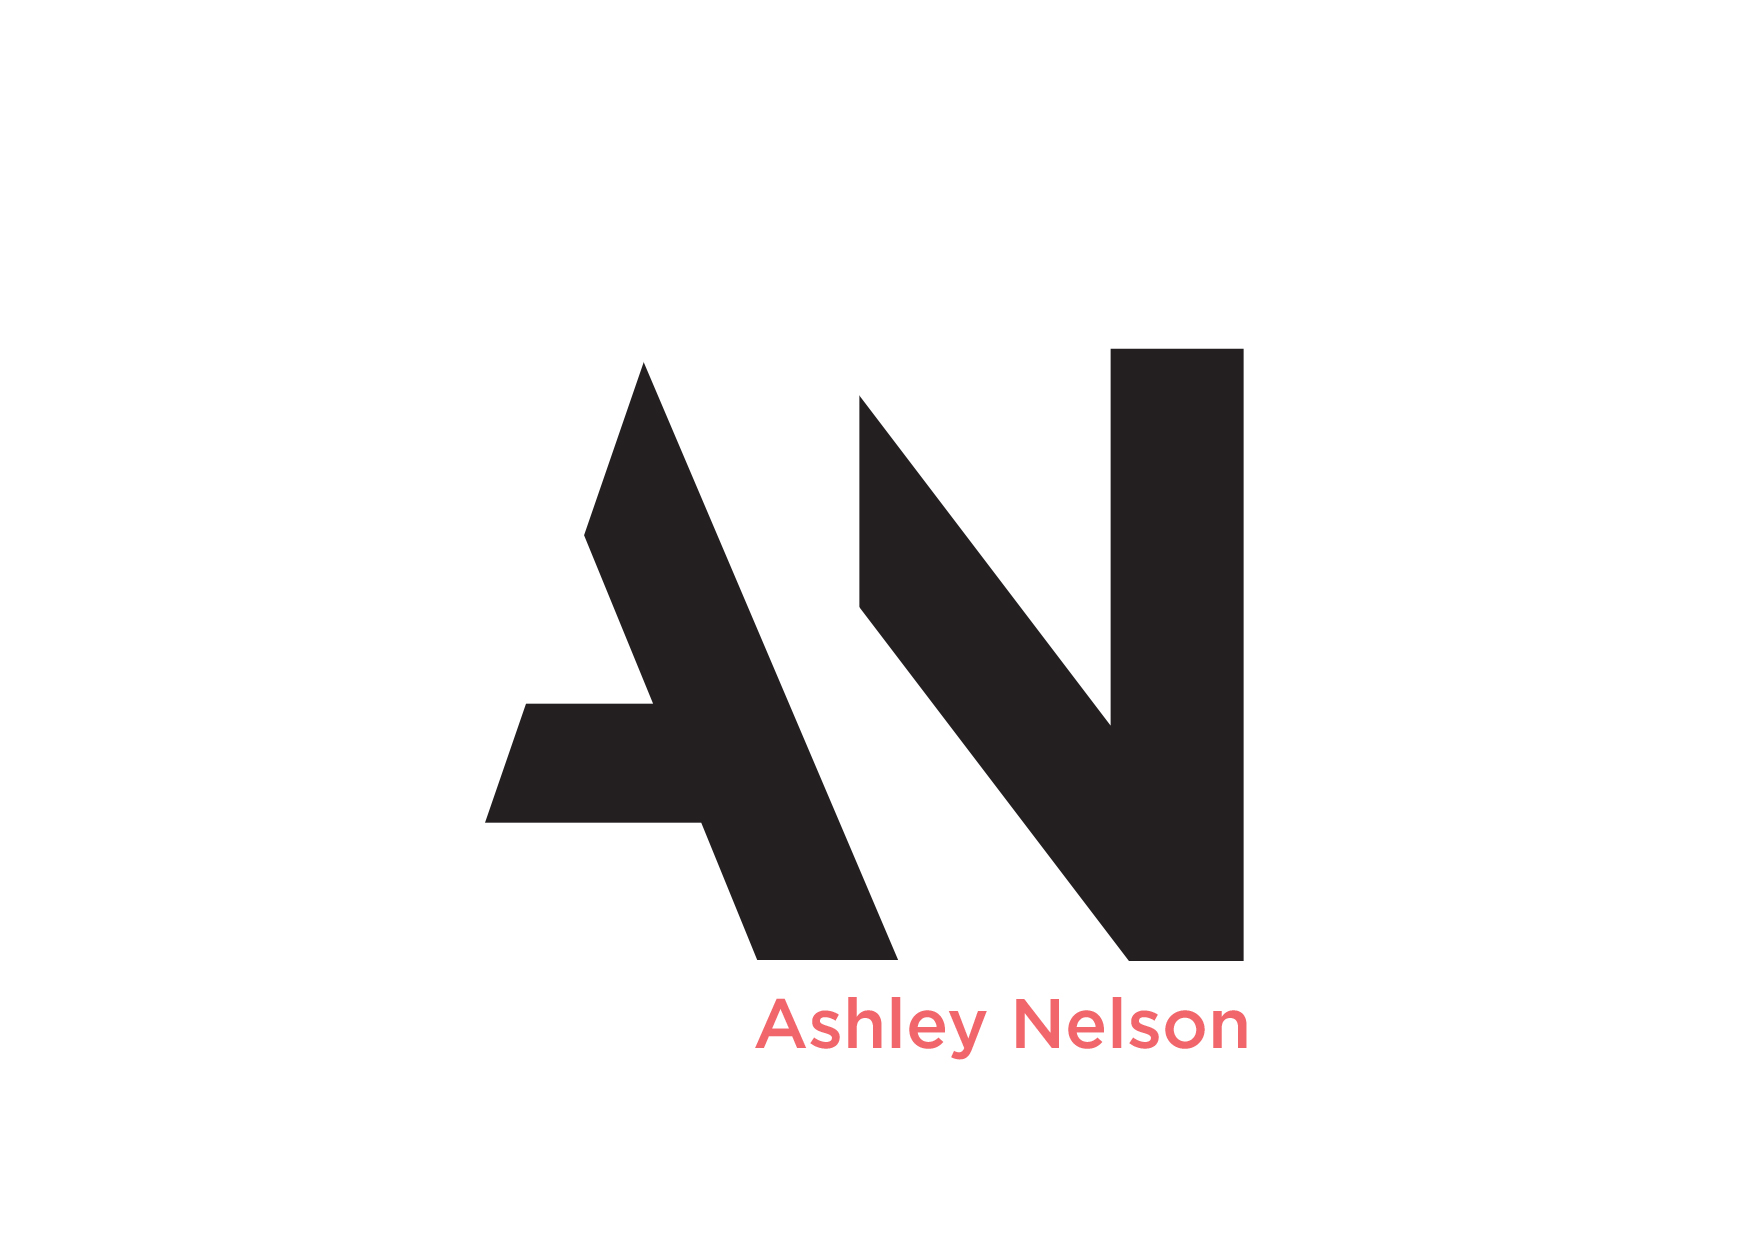 Ashley Nelson